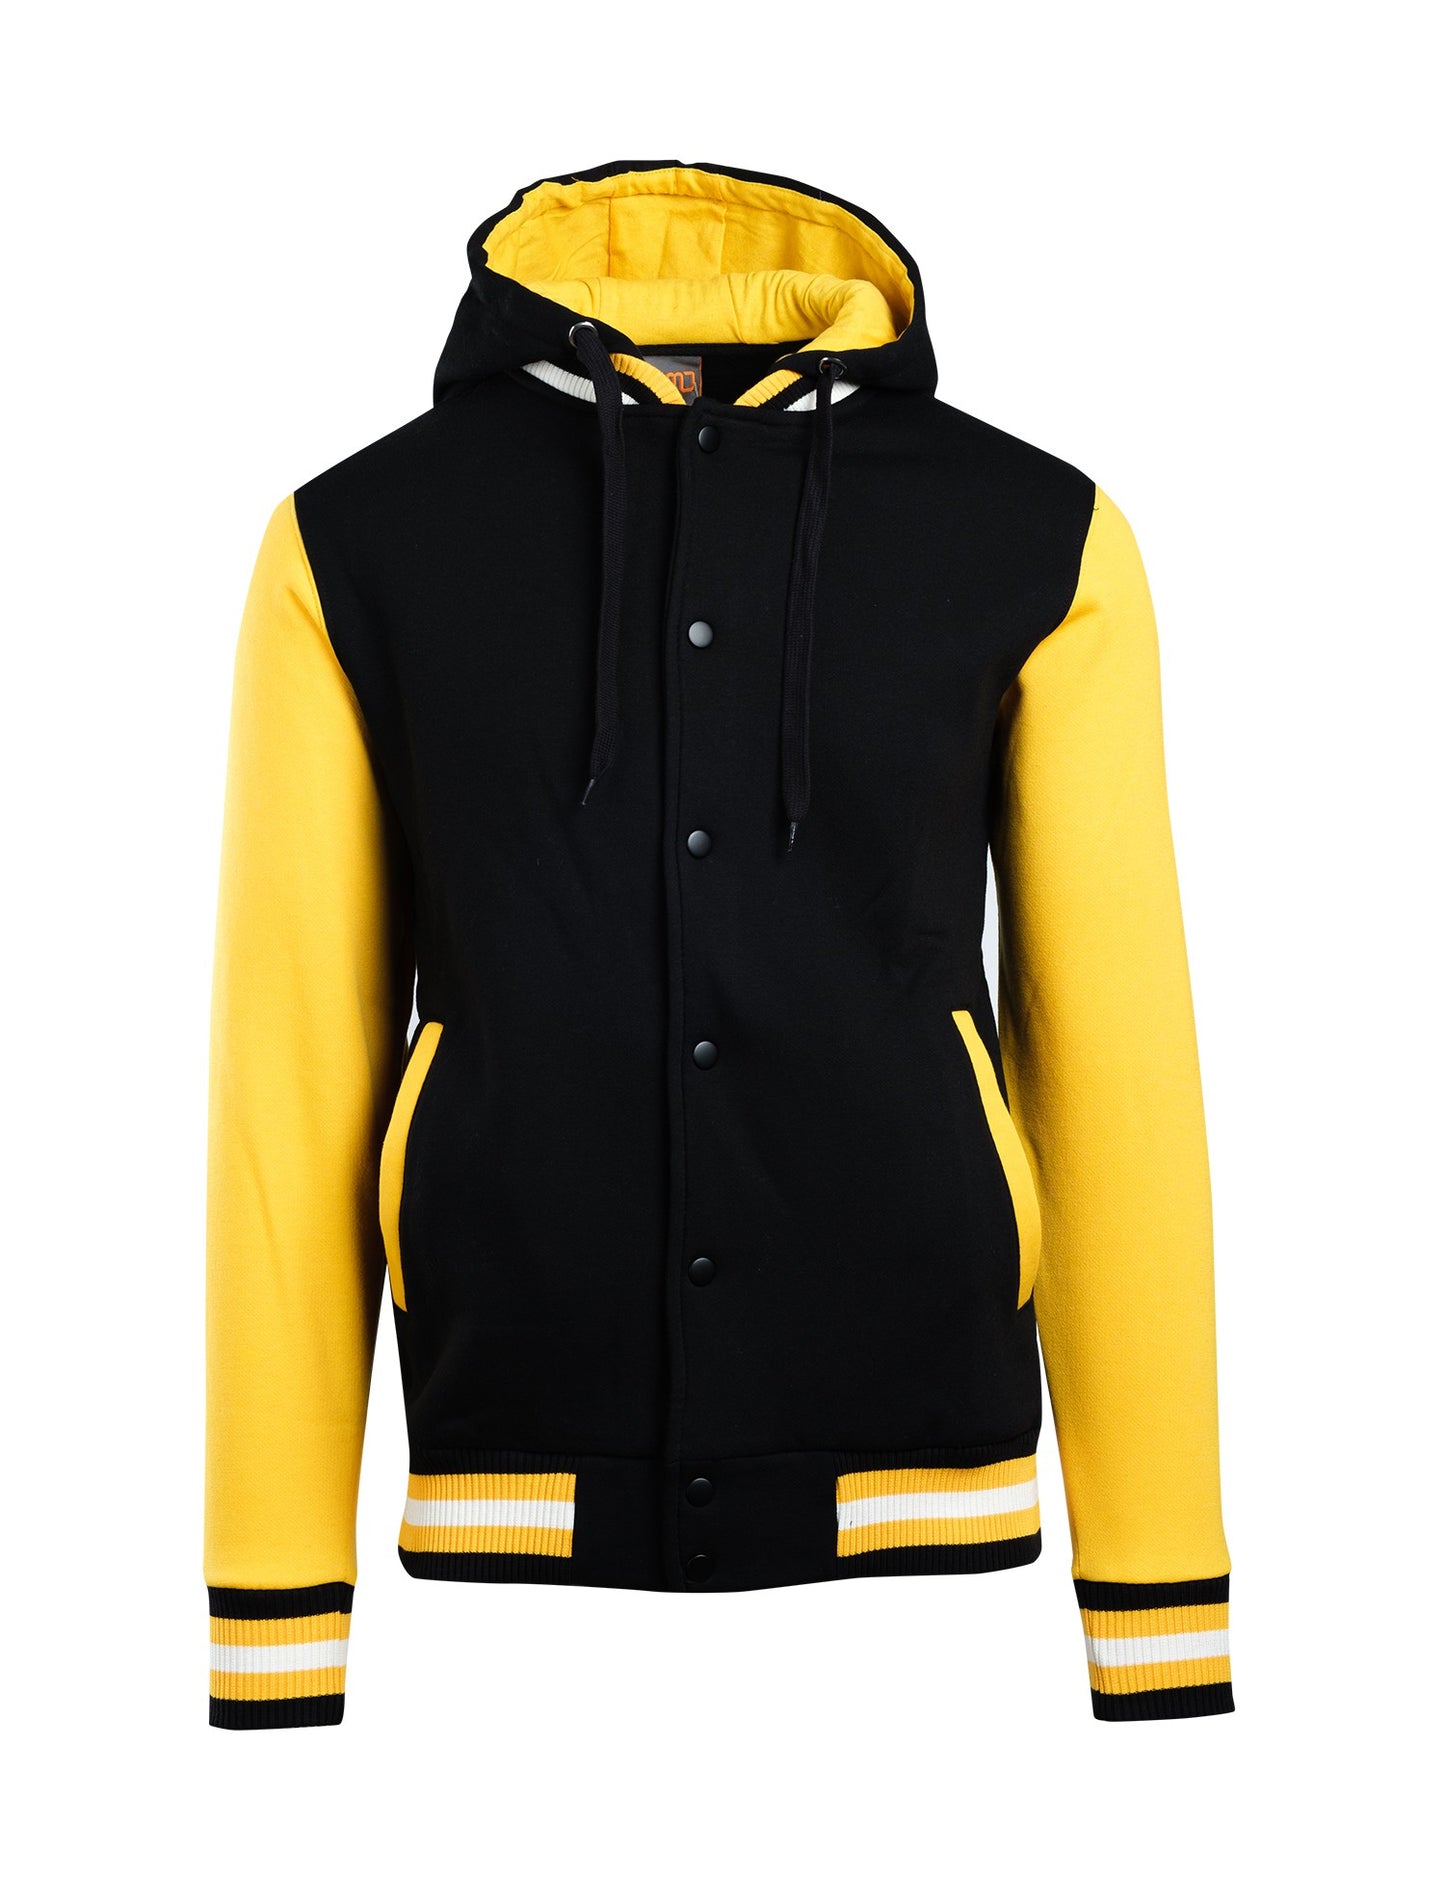 Men's Varsity Jacket & Hood